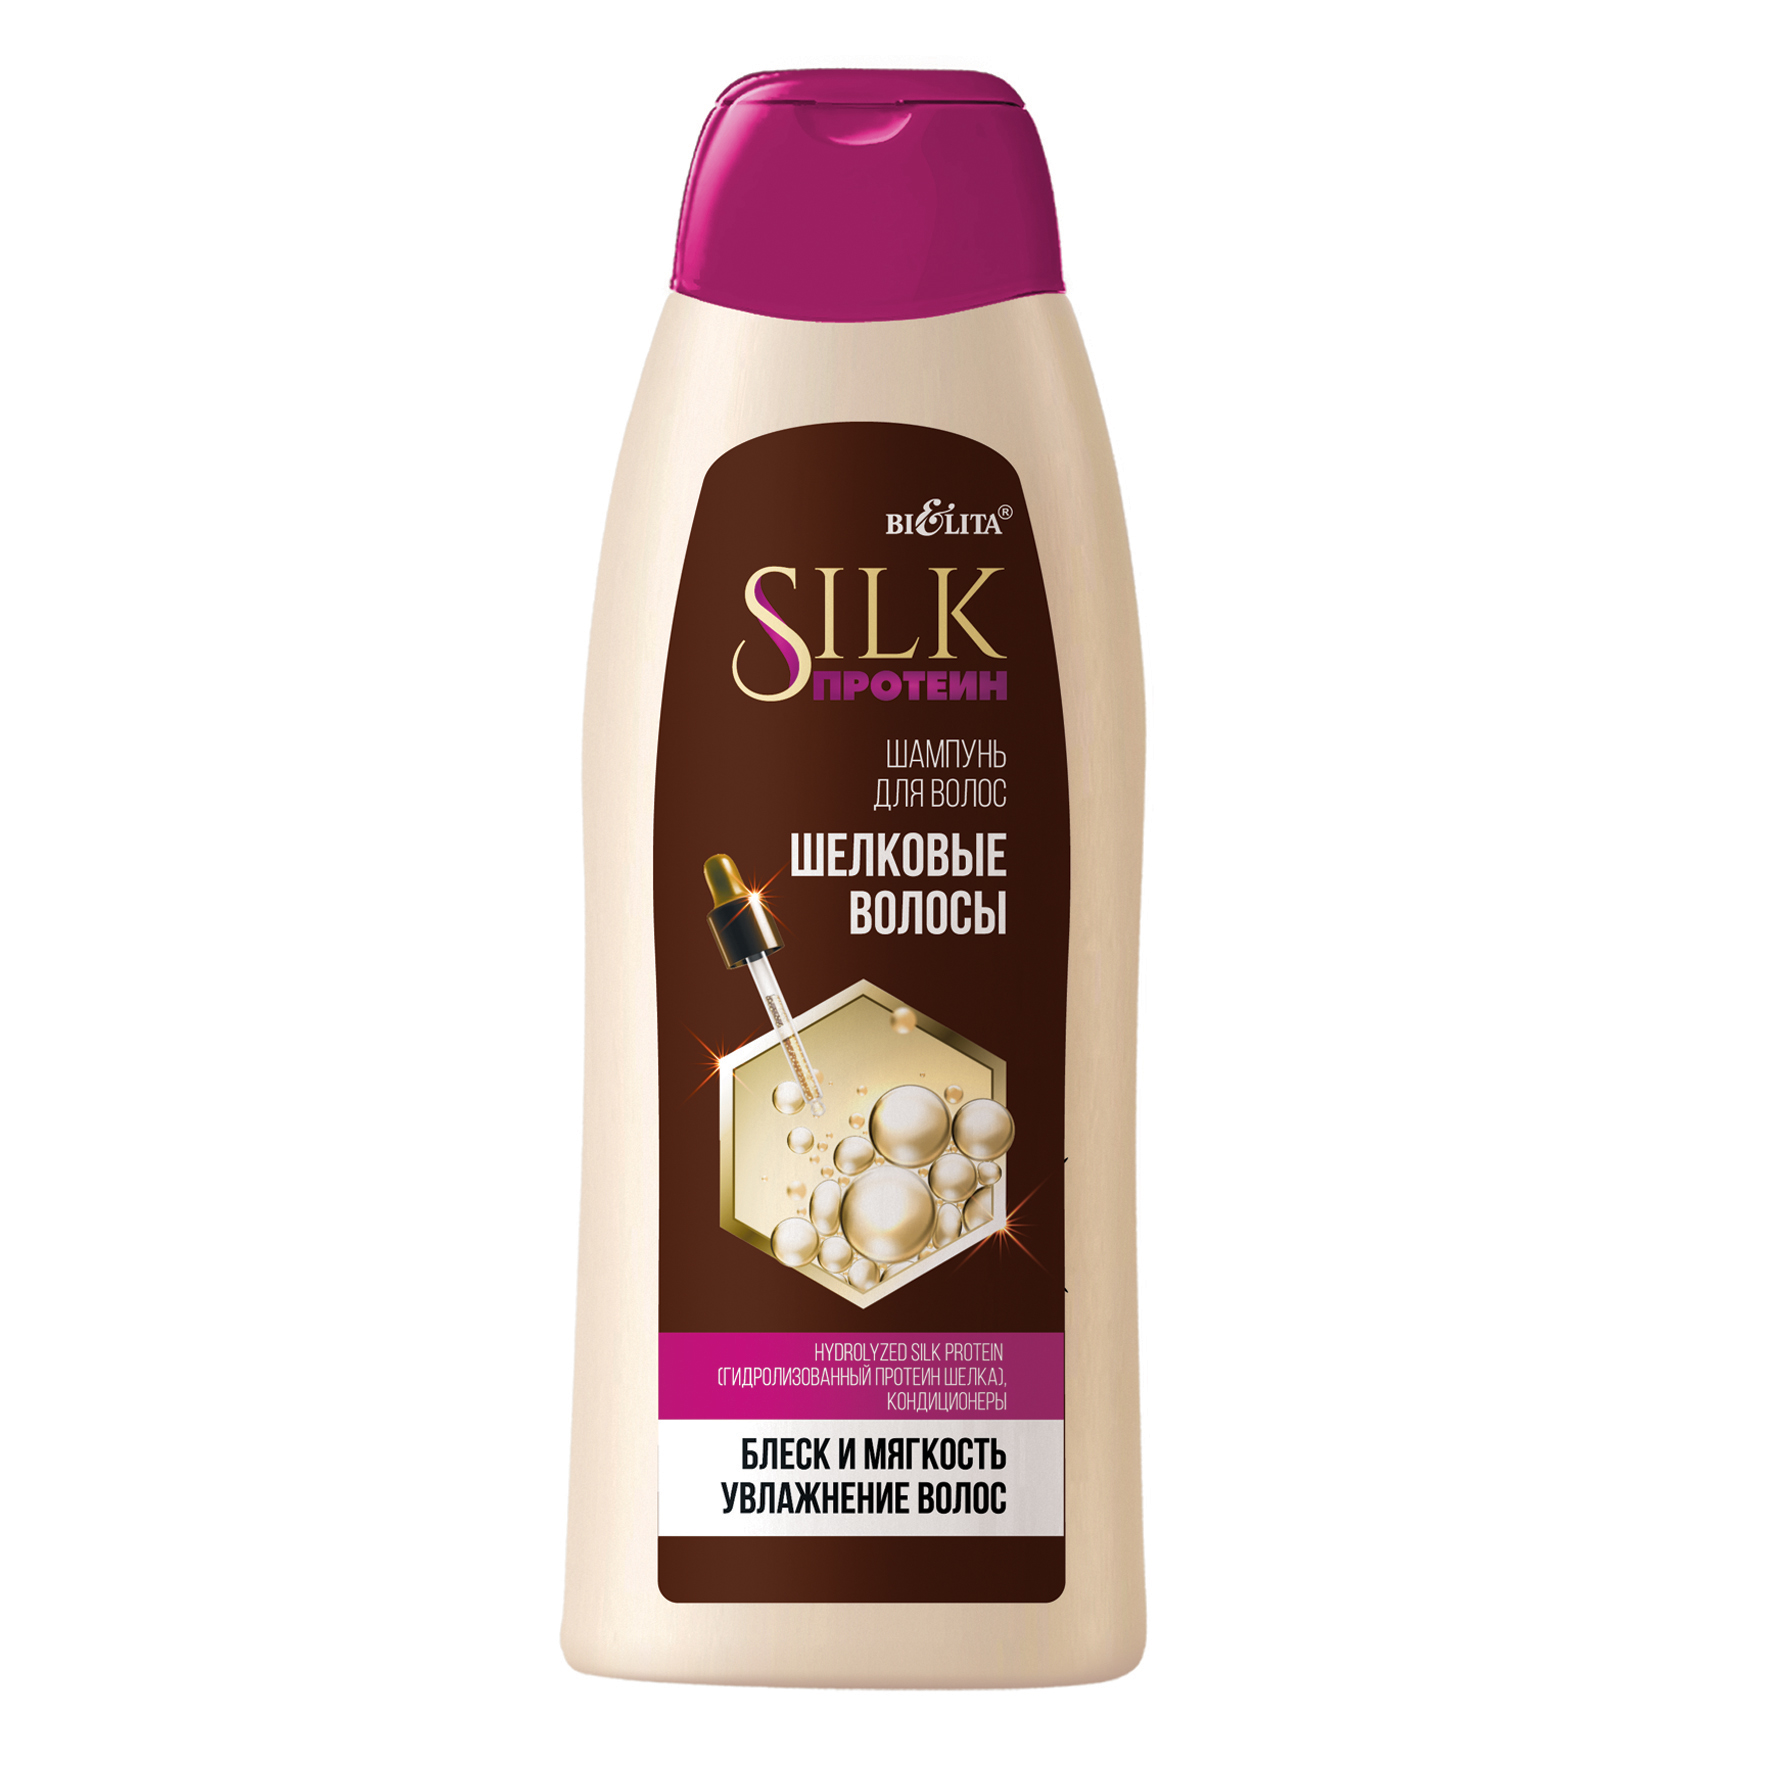 Silk-ШАМПУНЬ для волос "Шелковые волосы" 500 мл, SILK протеин